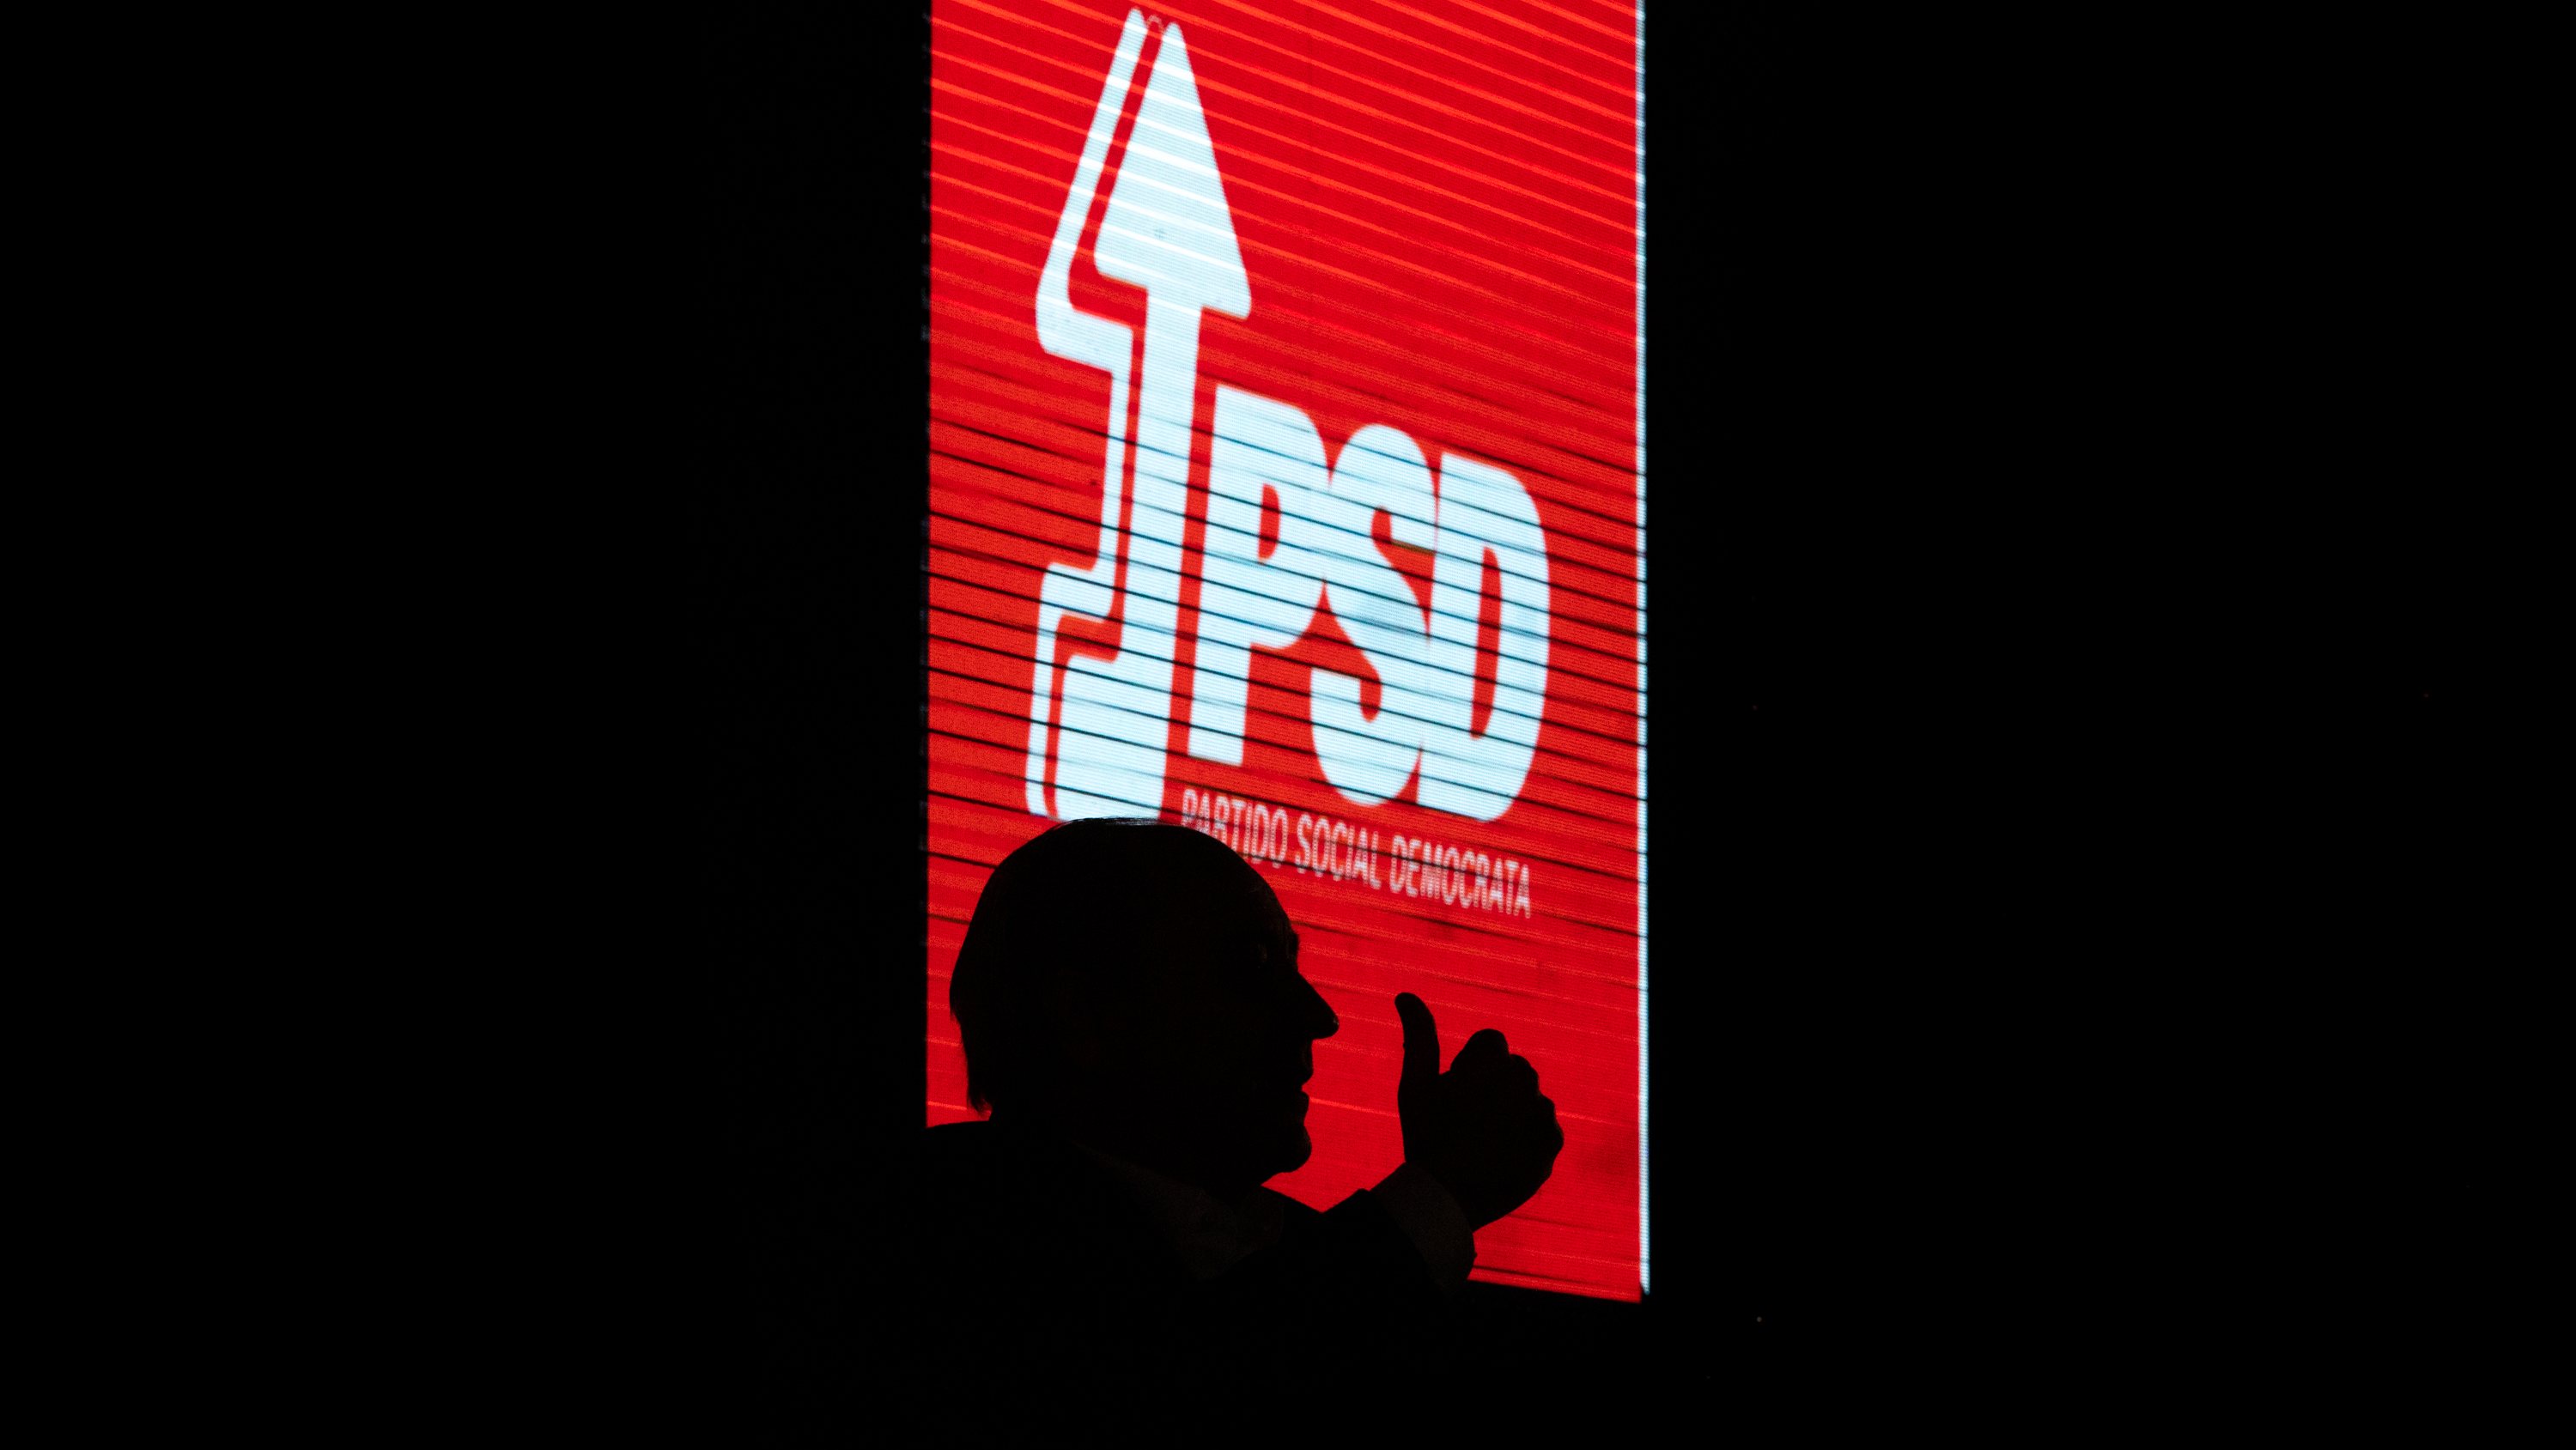 ELEIÇOES LEGISLATIVAS: Rui Rio, lider do Partido Social Democrata (PSD), durante uma sessão de esclarecimentos em Leiria. As eleições legislativas realizam-se no próximo dia 30 de Janeiro. 26 de Janeiro de 2022, Leiria TOMÁS SILVA/OBSERVADOR